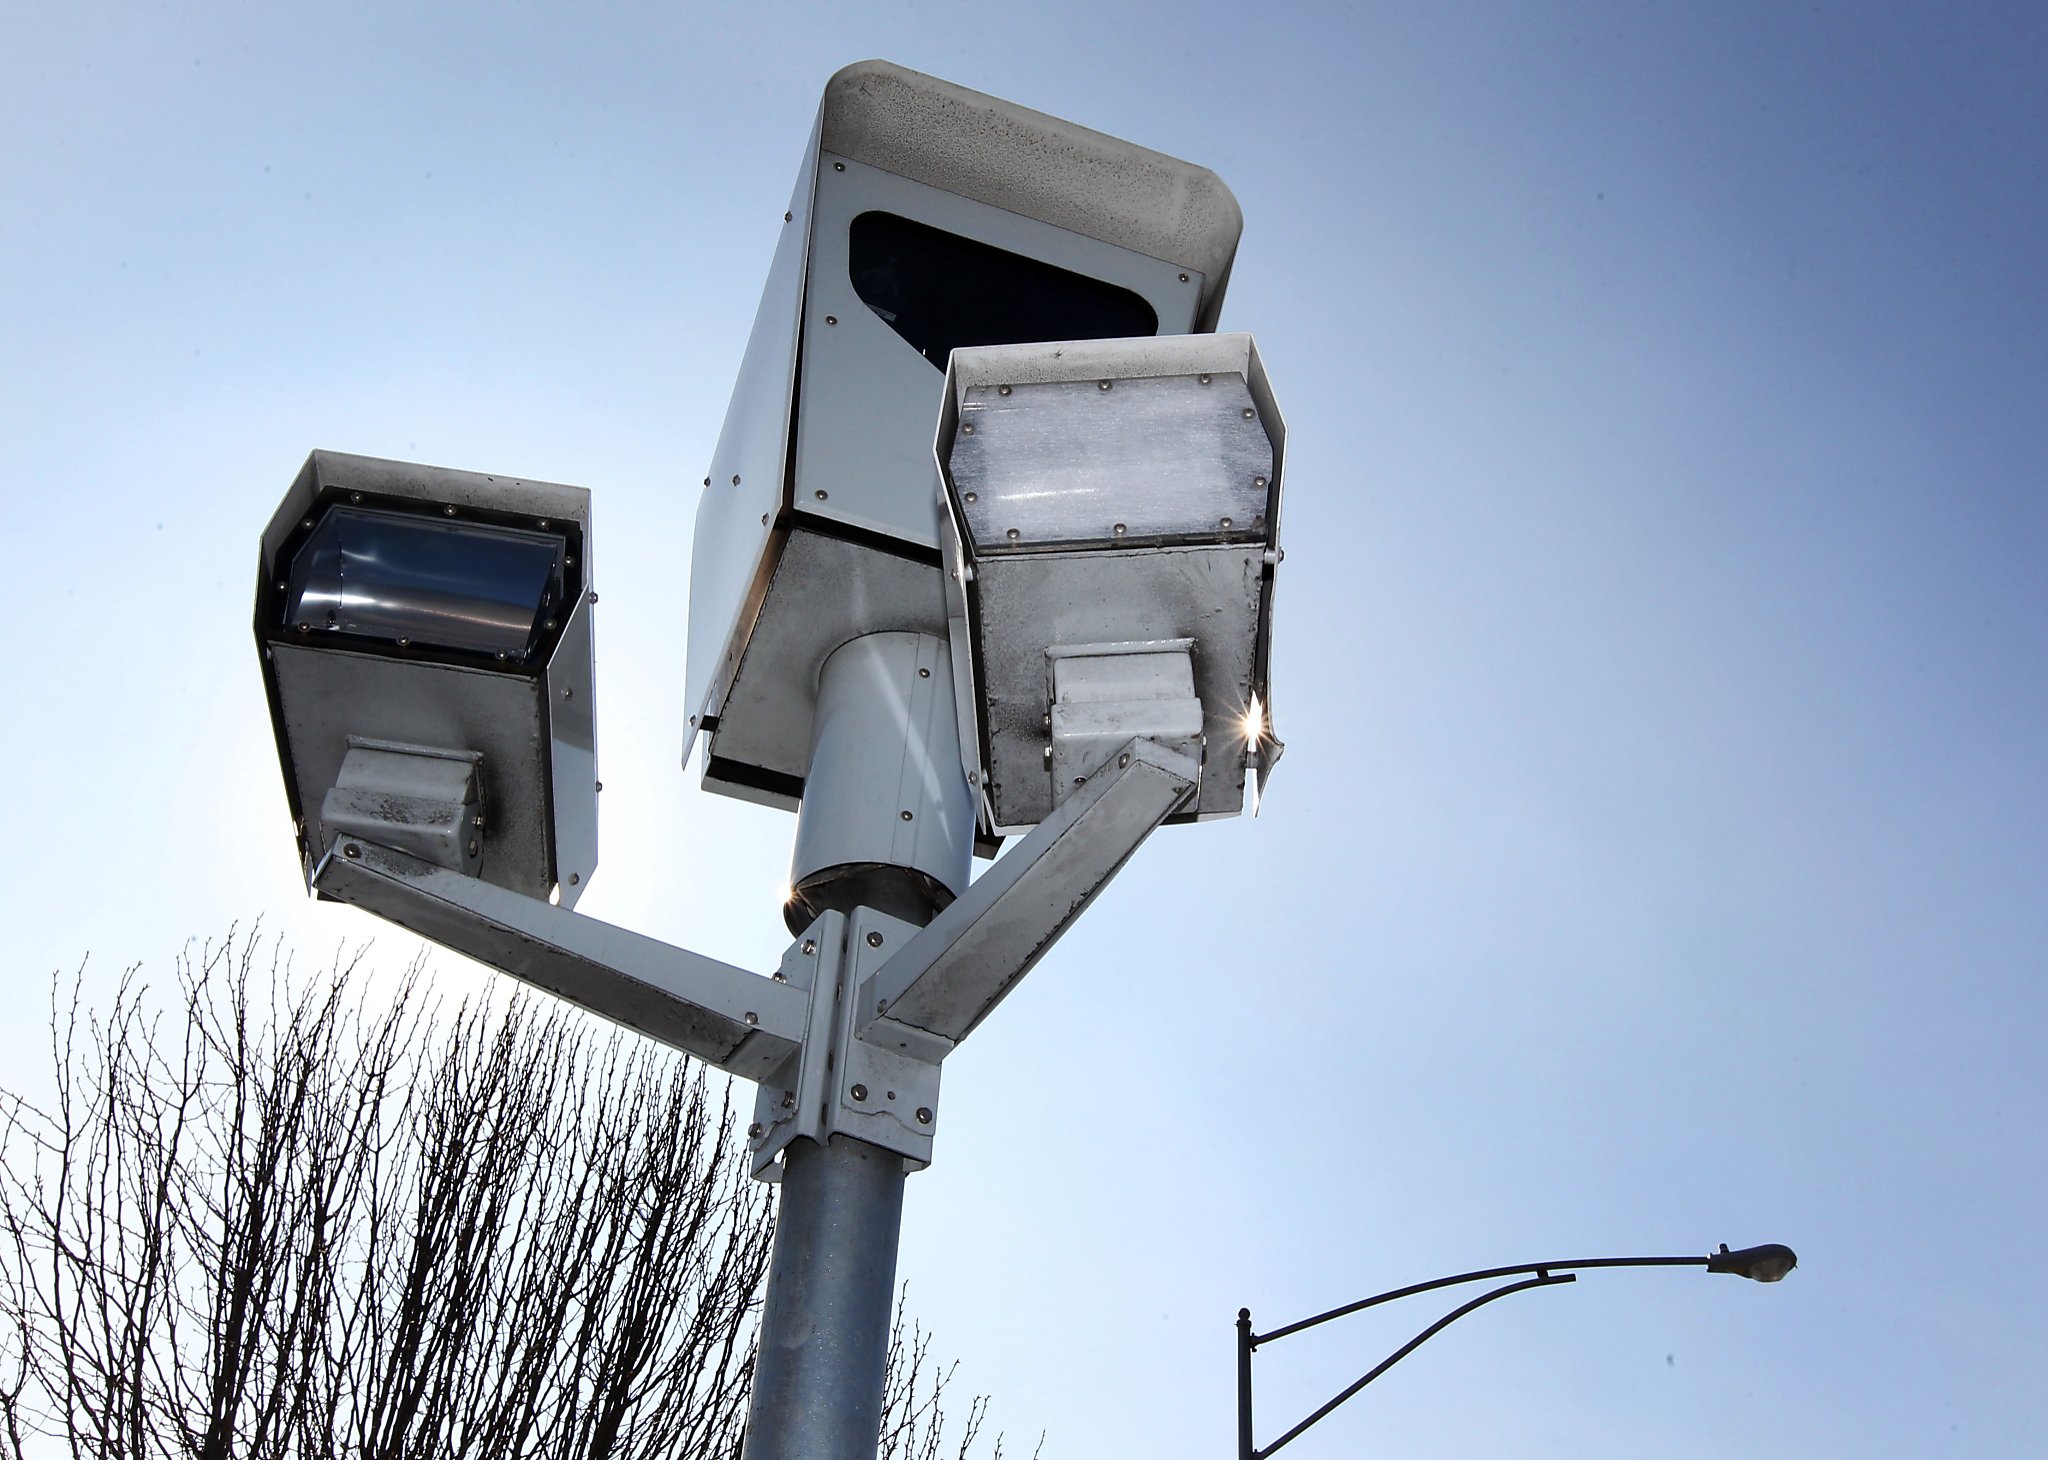 streaming traffic cameras